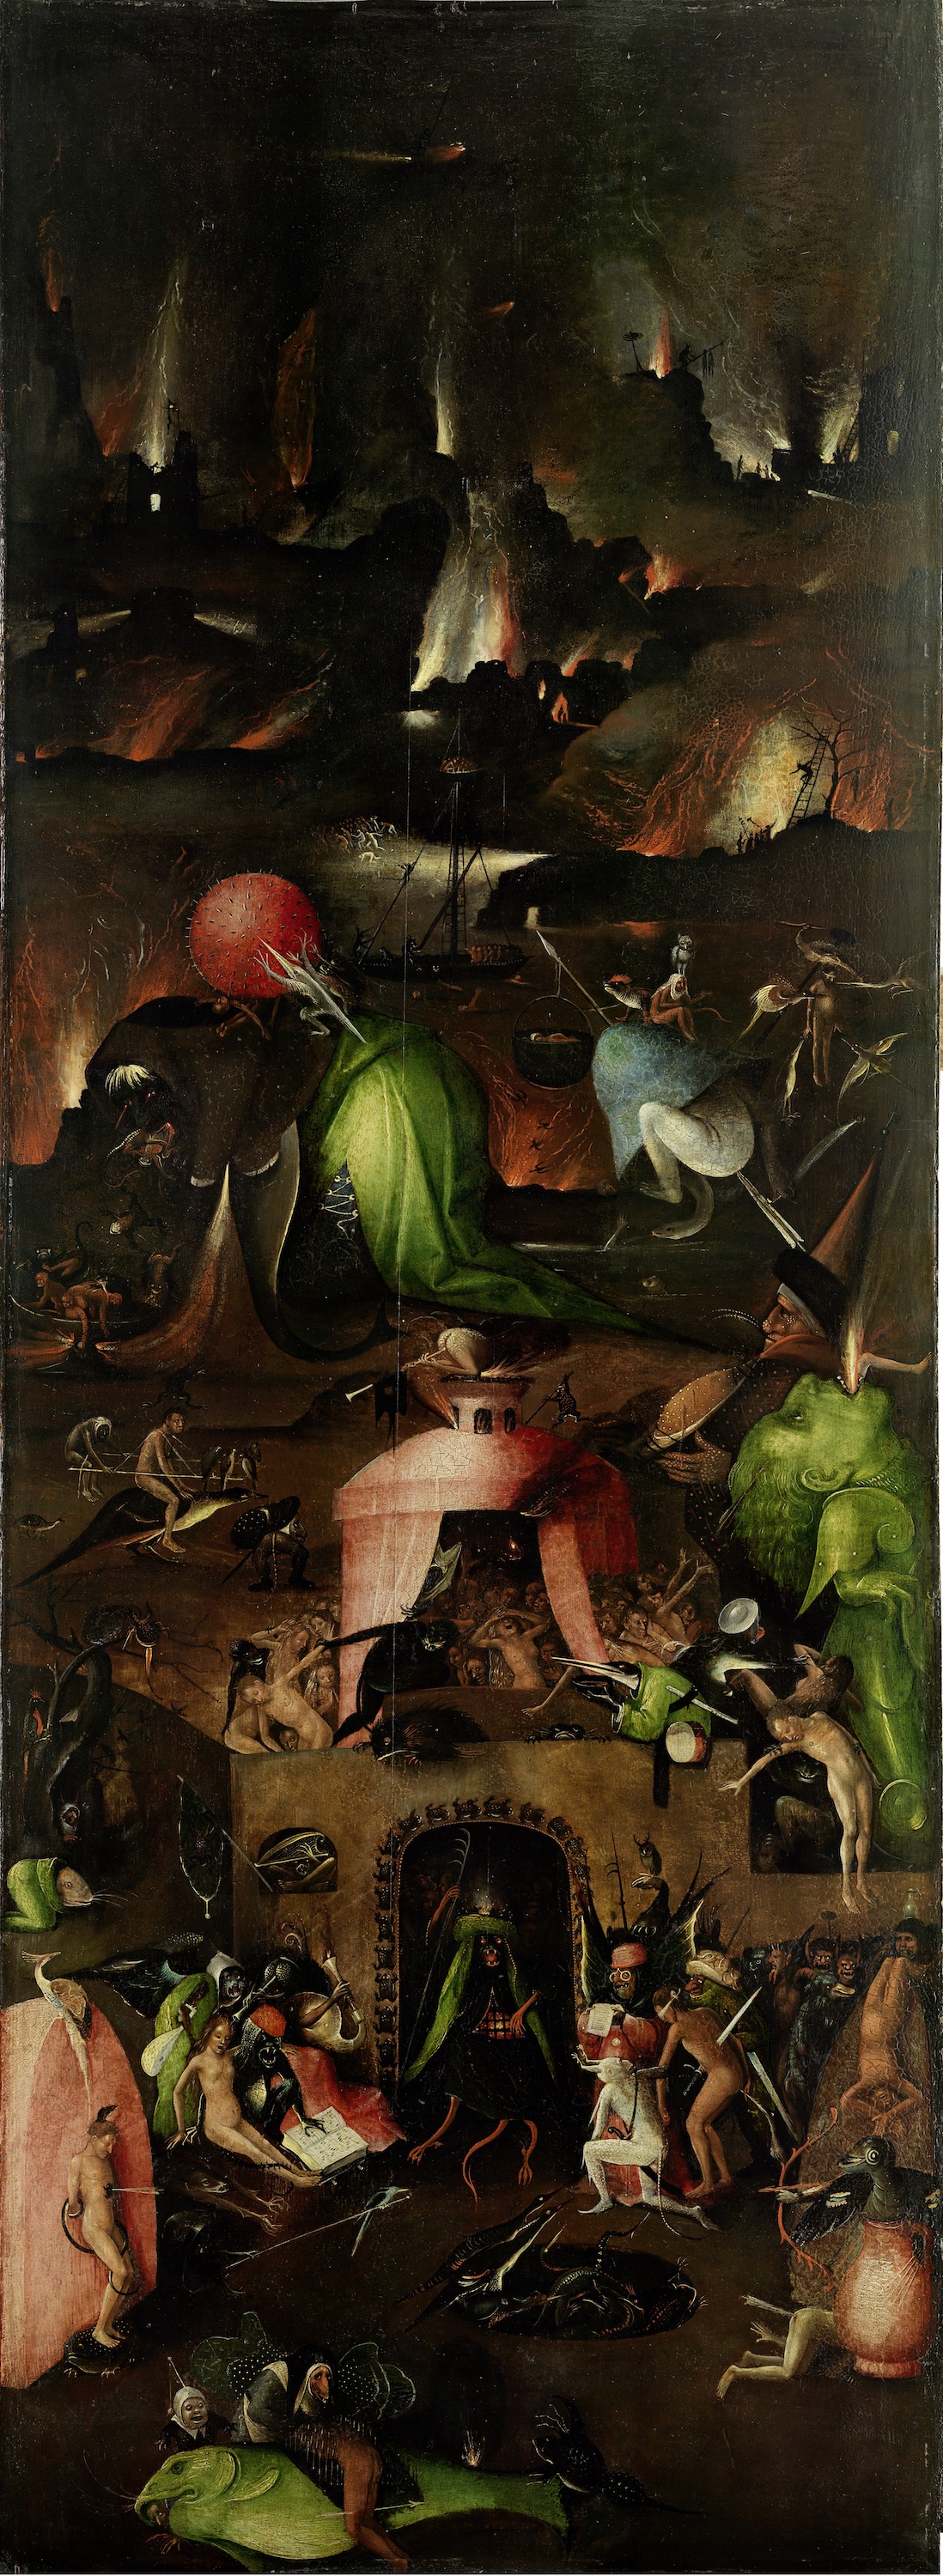 El tríptico del Juicio Final - el panel derecho by Hieronymus Bosch - c. 1500 La Academia de Bellas Artes de Viena